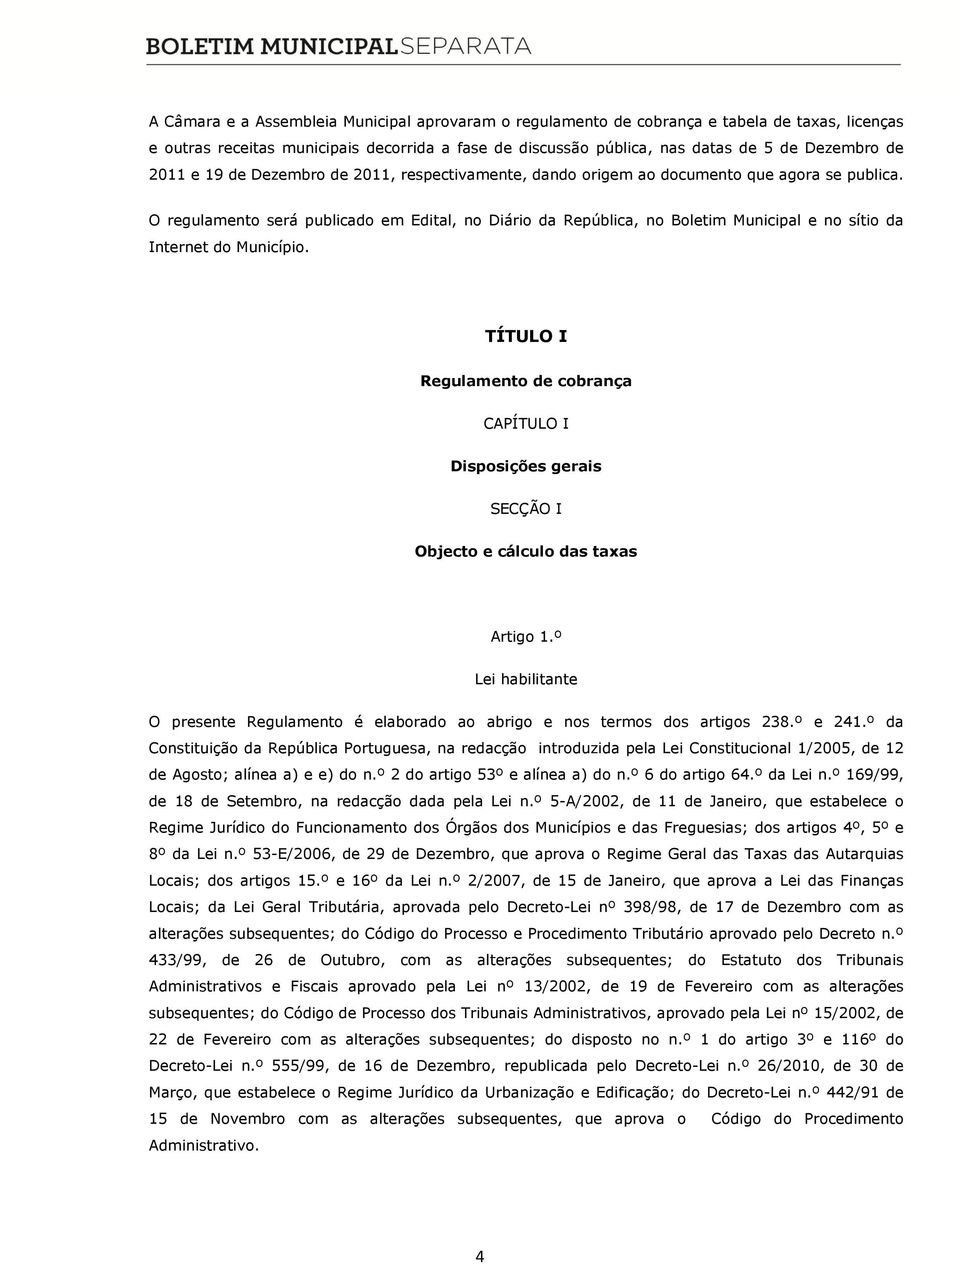 O regulamento será publicado em Edital, no Diário da República, no Boletim Municipal e no sítio da Internet do Município.